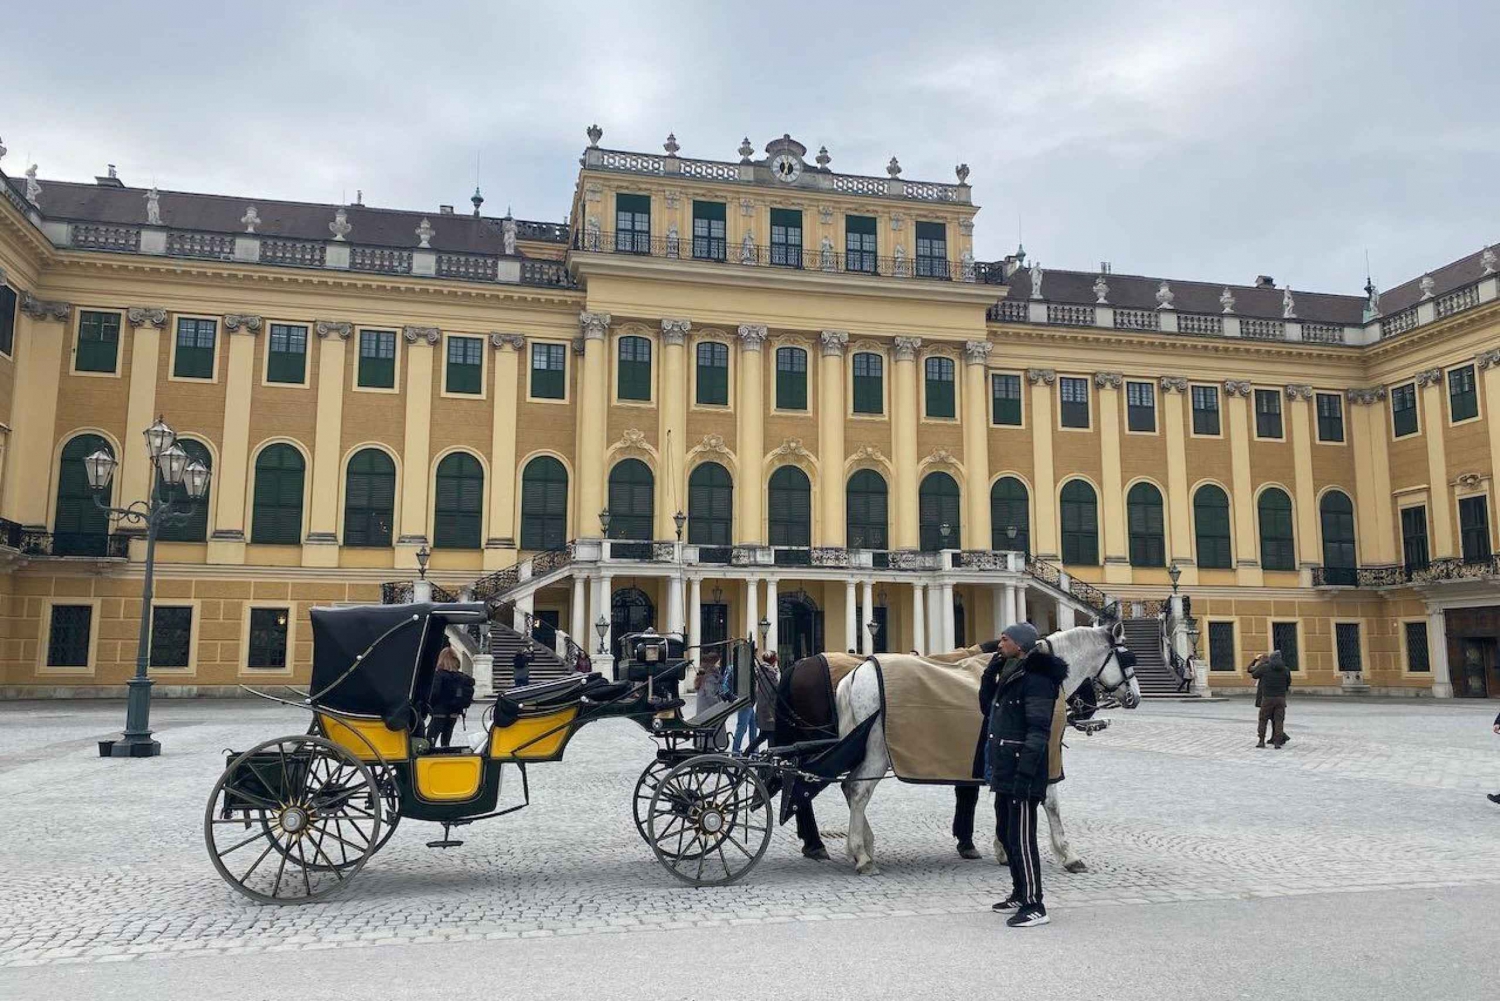 Wiedeński pałac Schönbrunn - wpisany na listę światowego dziedzictwa UNESCO